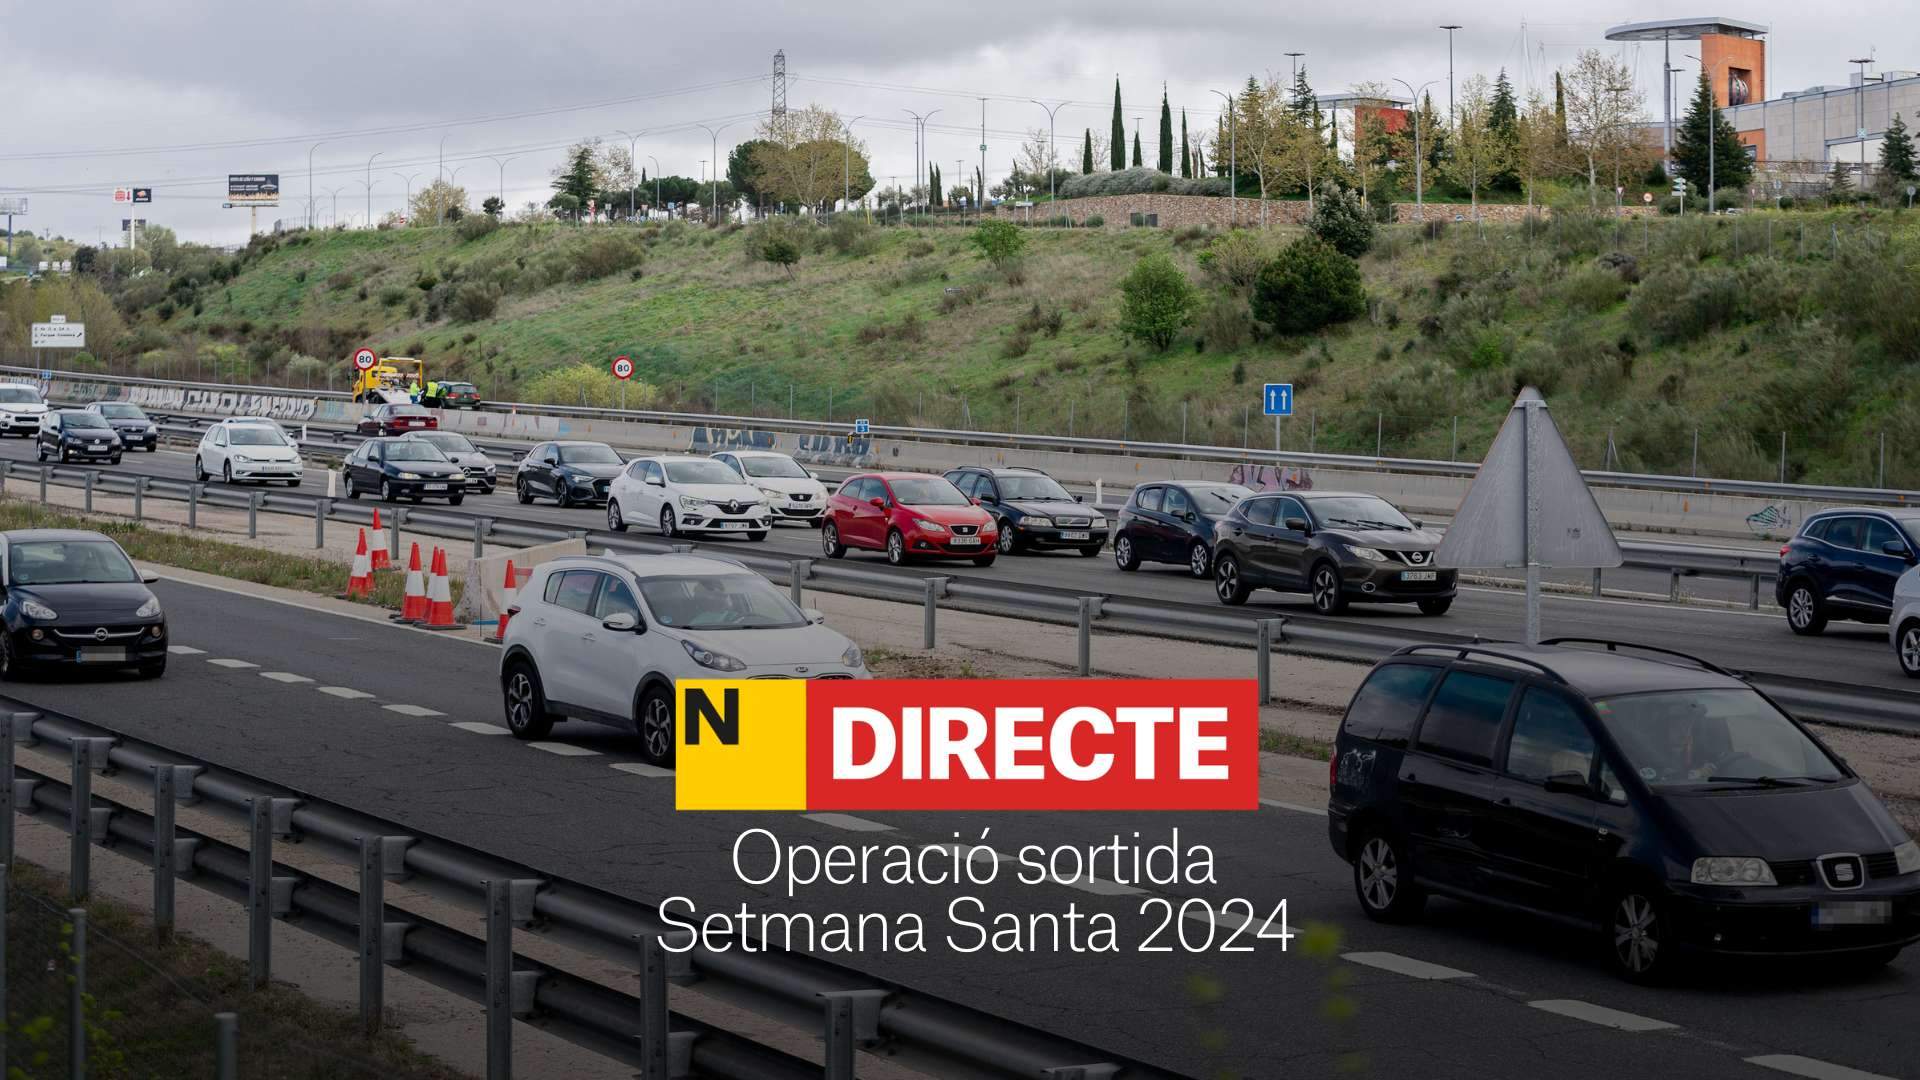 Operació sortida de Setmana Santa 2024, DIRECTE | Estat de les carreteres en temps real